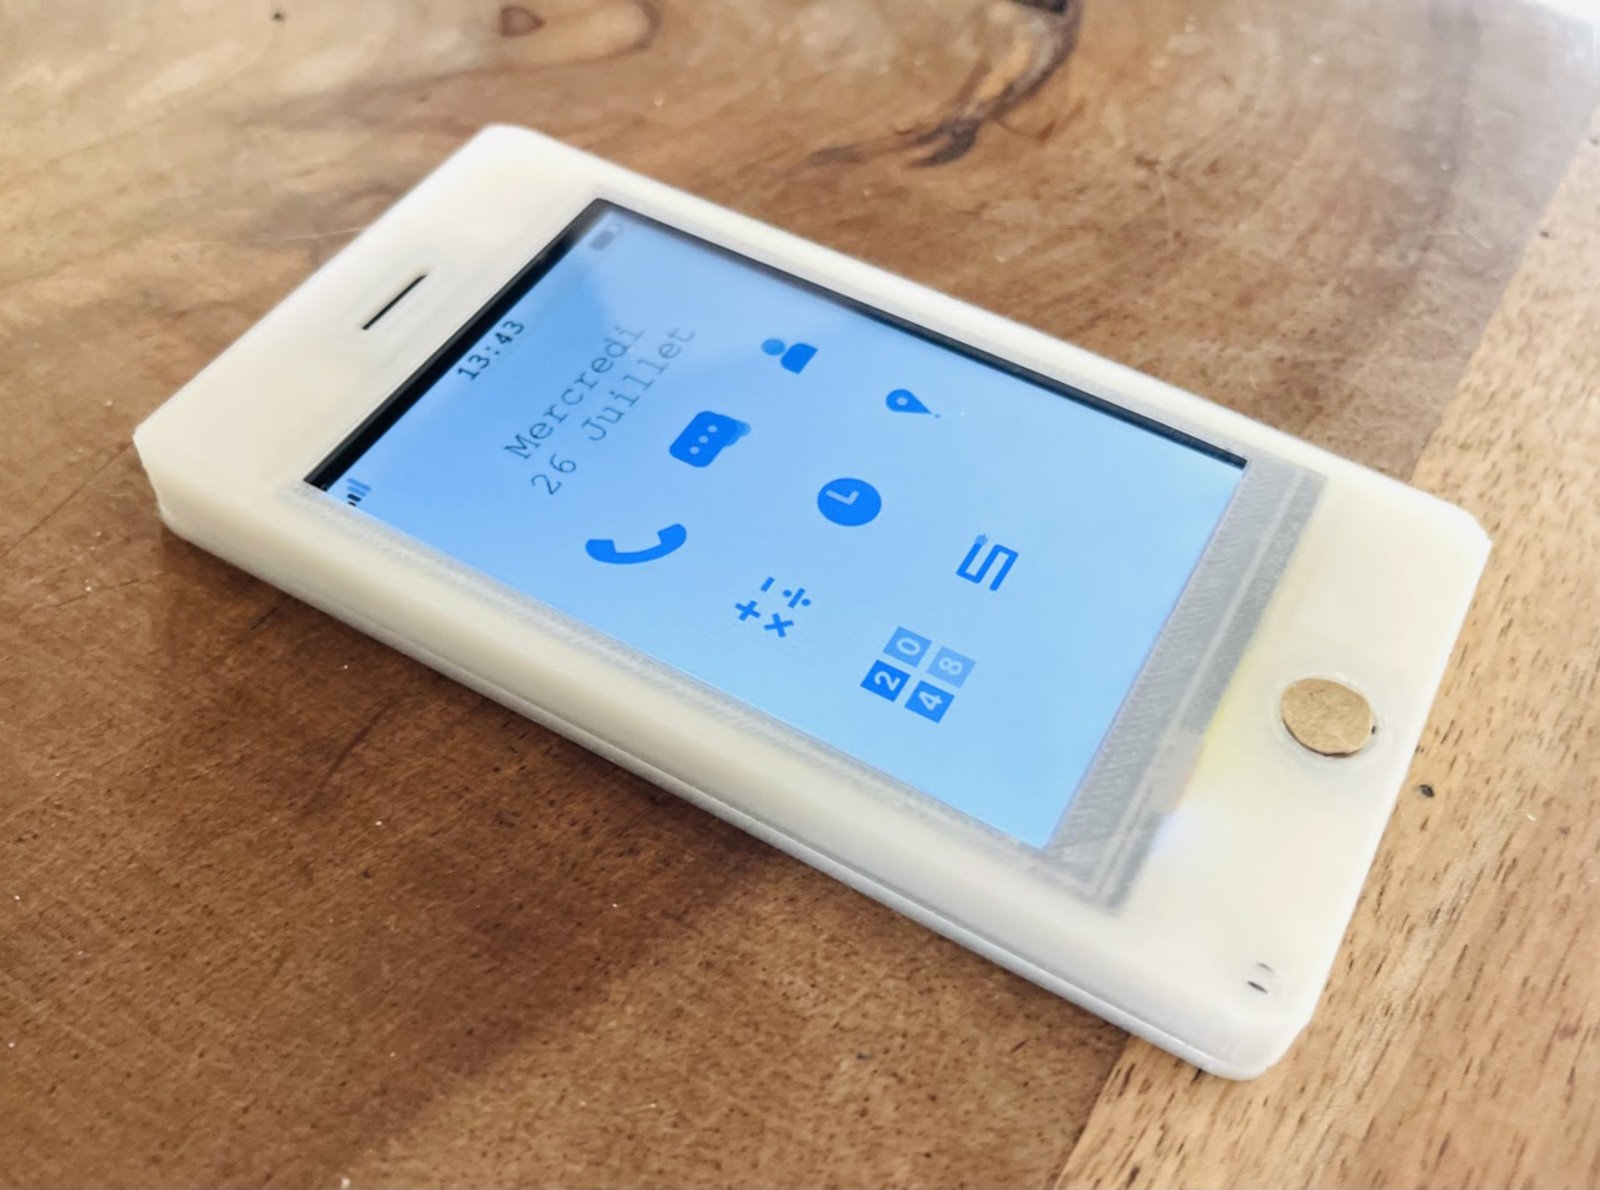 Le Paxo Phone version 4, un téléphone 2G à assembler soi-même. © Gabriel Rochet